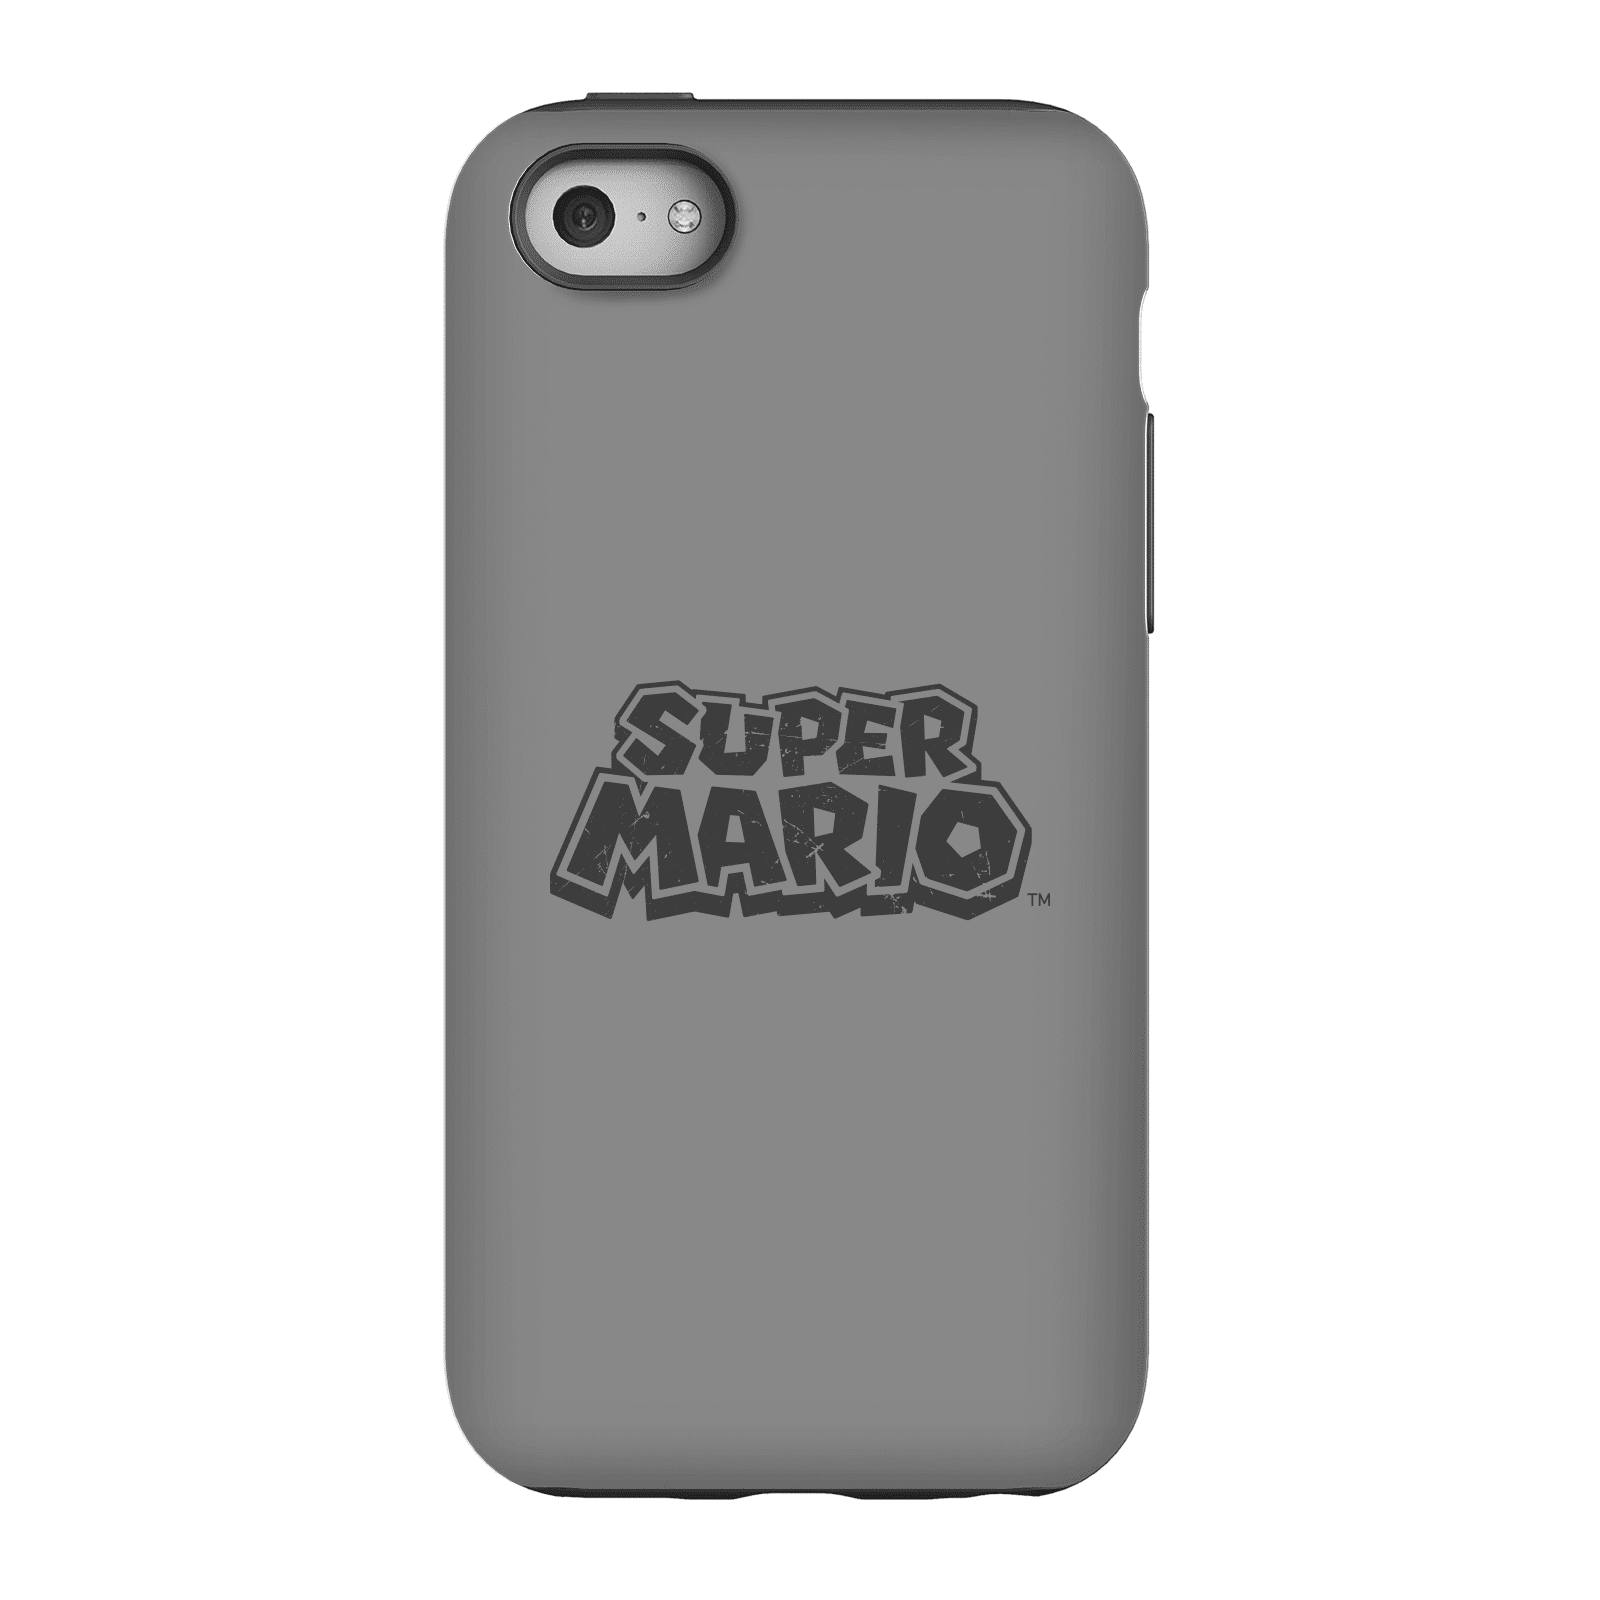 Nintendo Super Mario Distressed Logo Phone Case - iPhone 5C - Tough Case - Matte